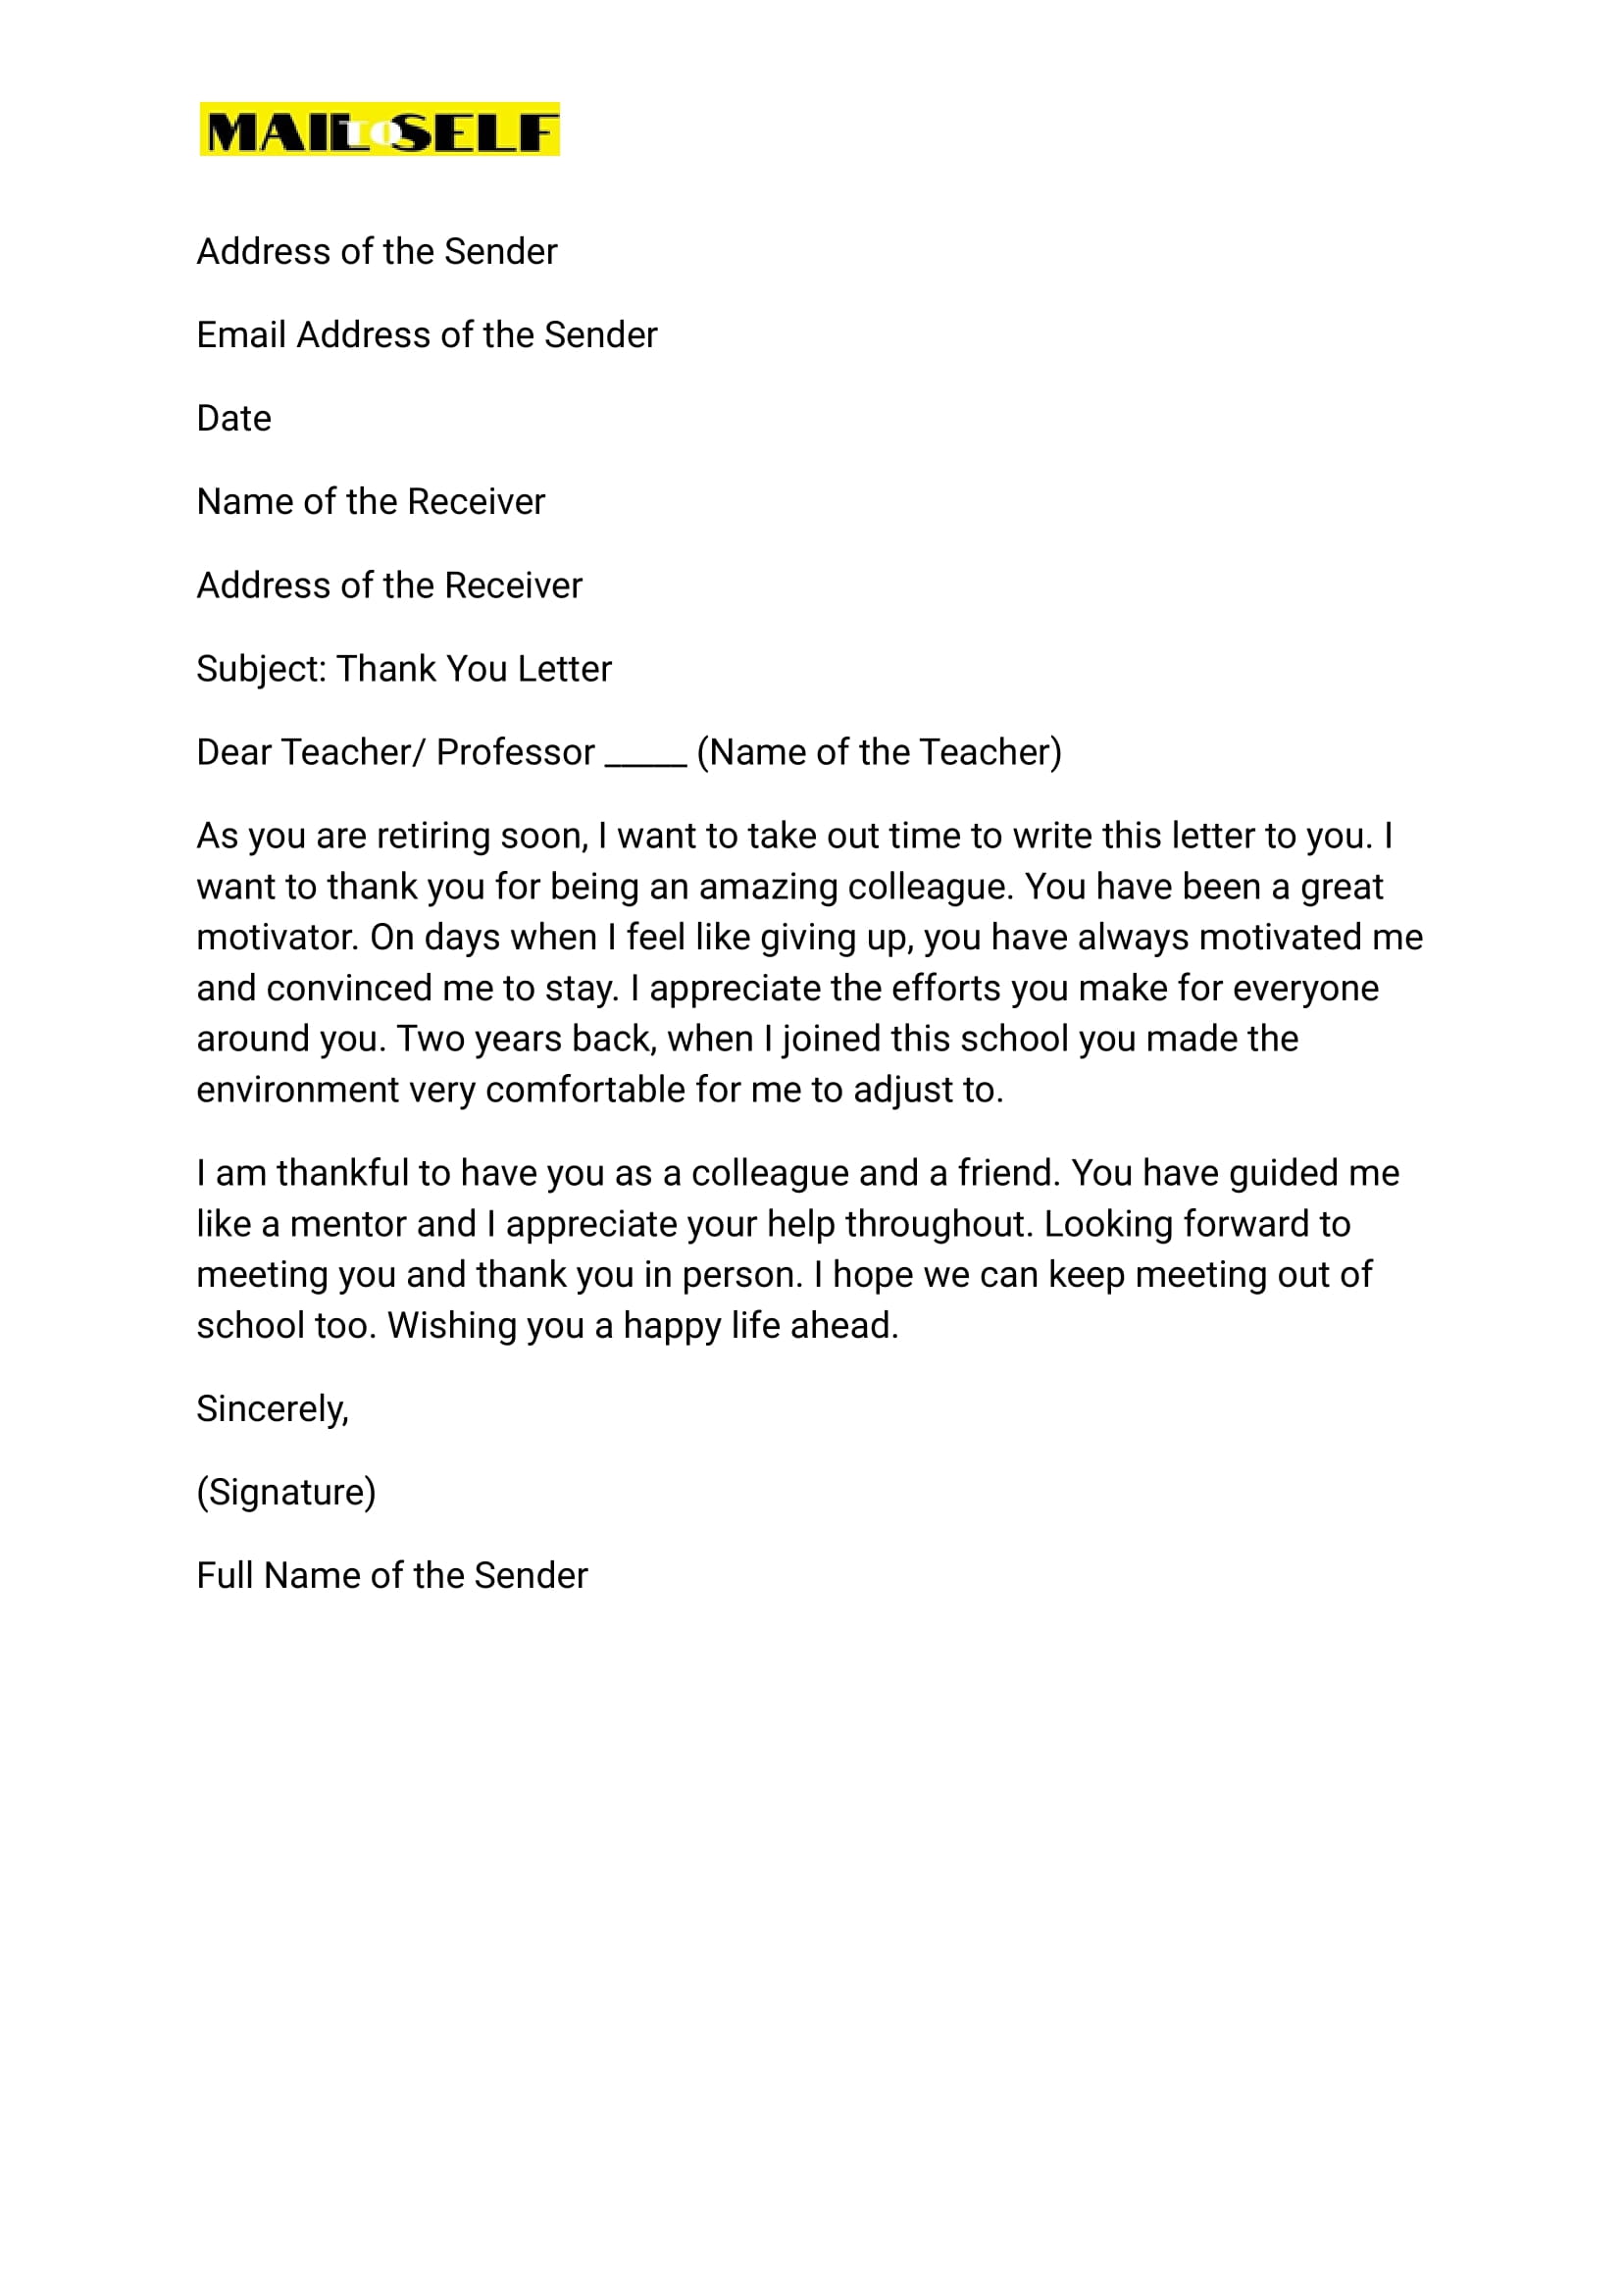 Sample #3 for Thank You Letter to Retiring Teacher